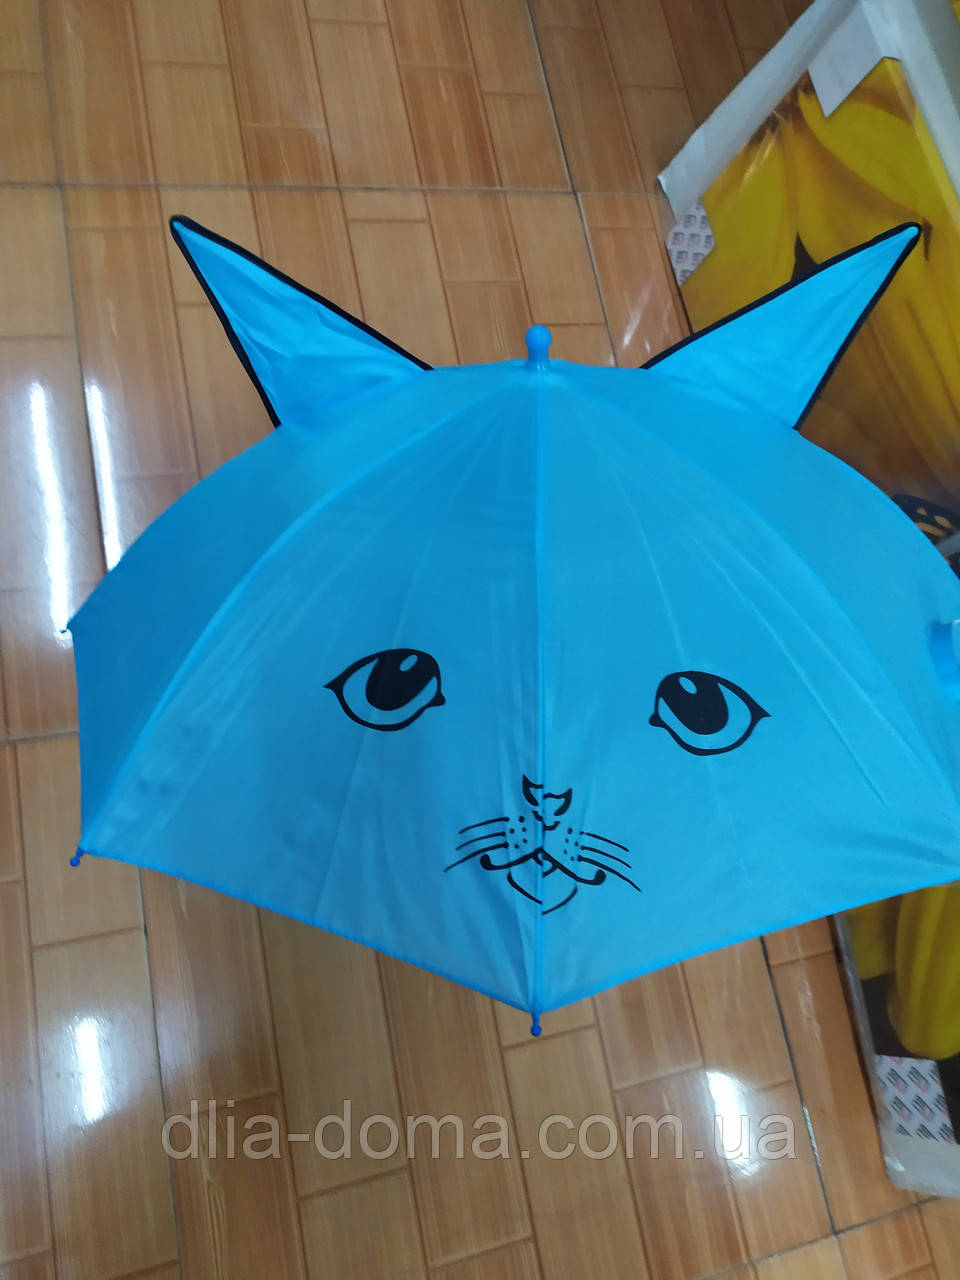 Зонтик детский со свистком Ушки в ассортименте